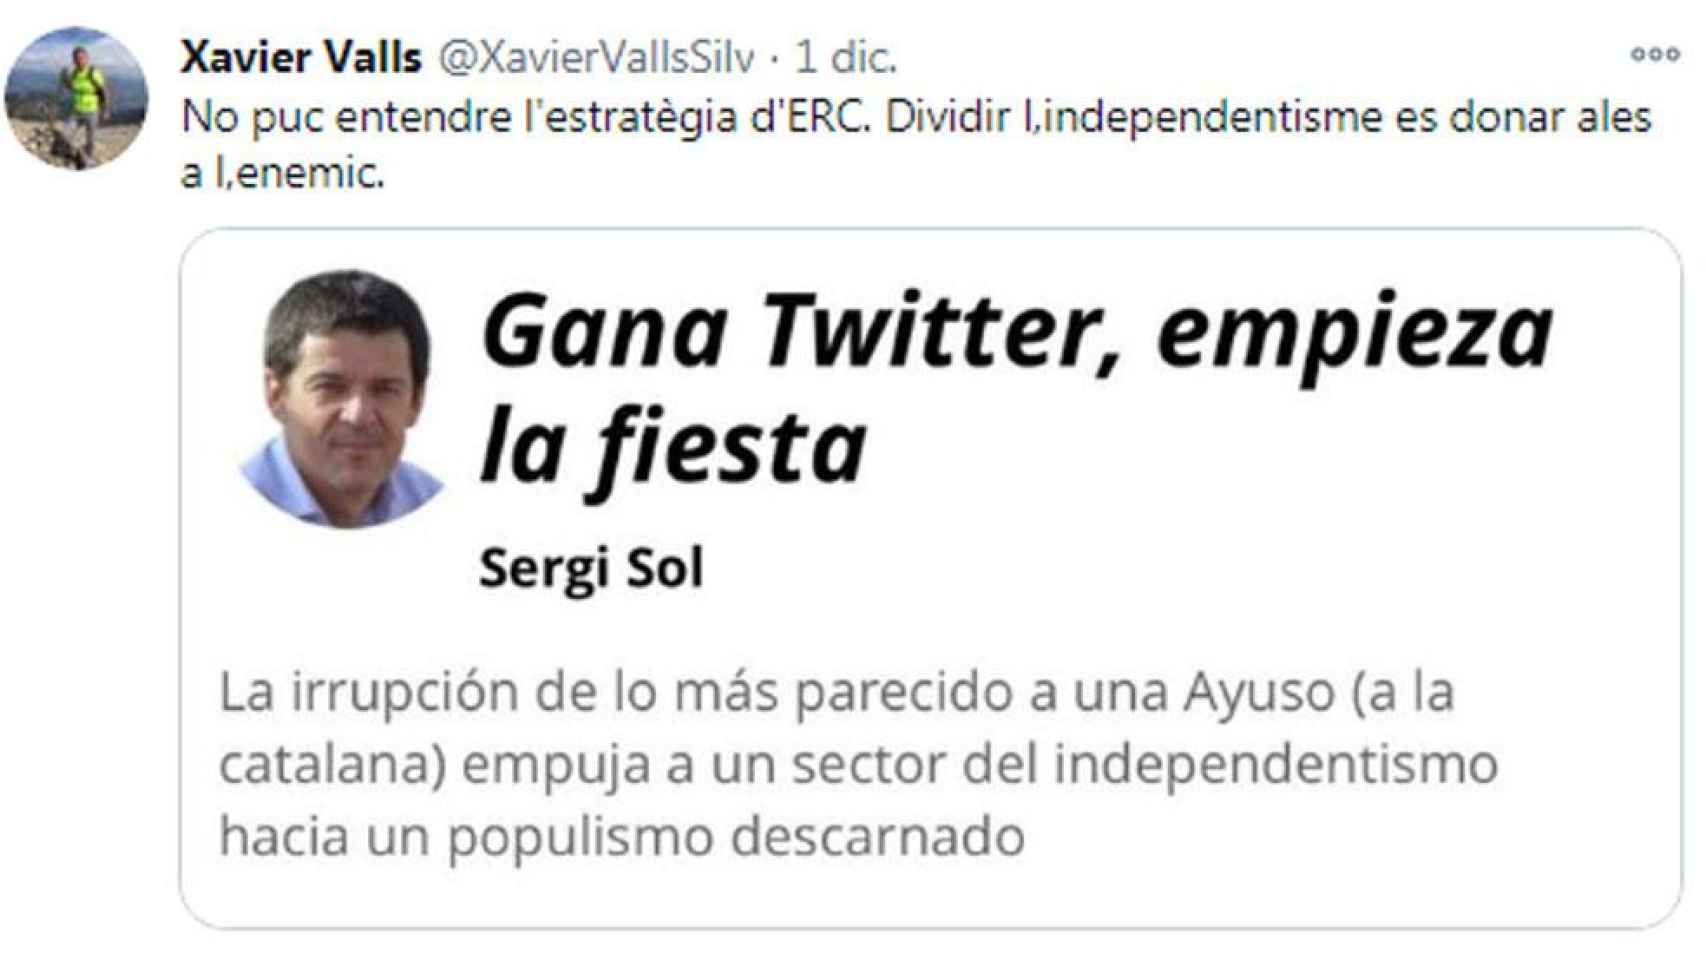 Tuit del presentador de TV3 Xavier Valls, lamentando la división del independentismo